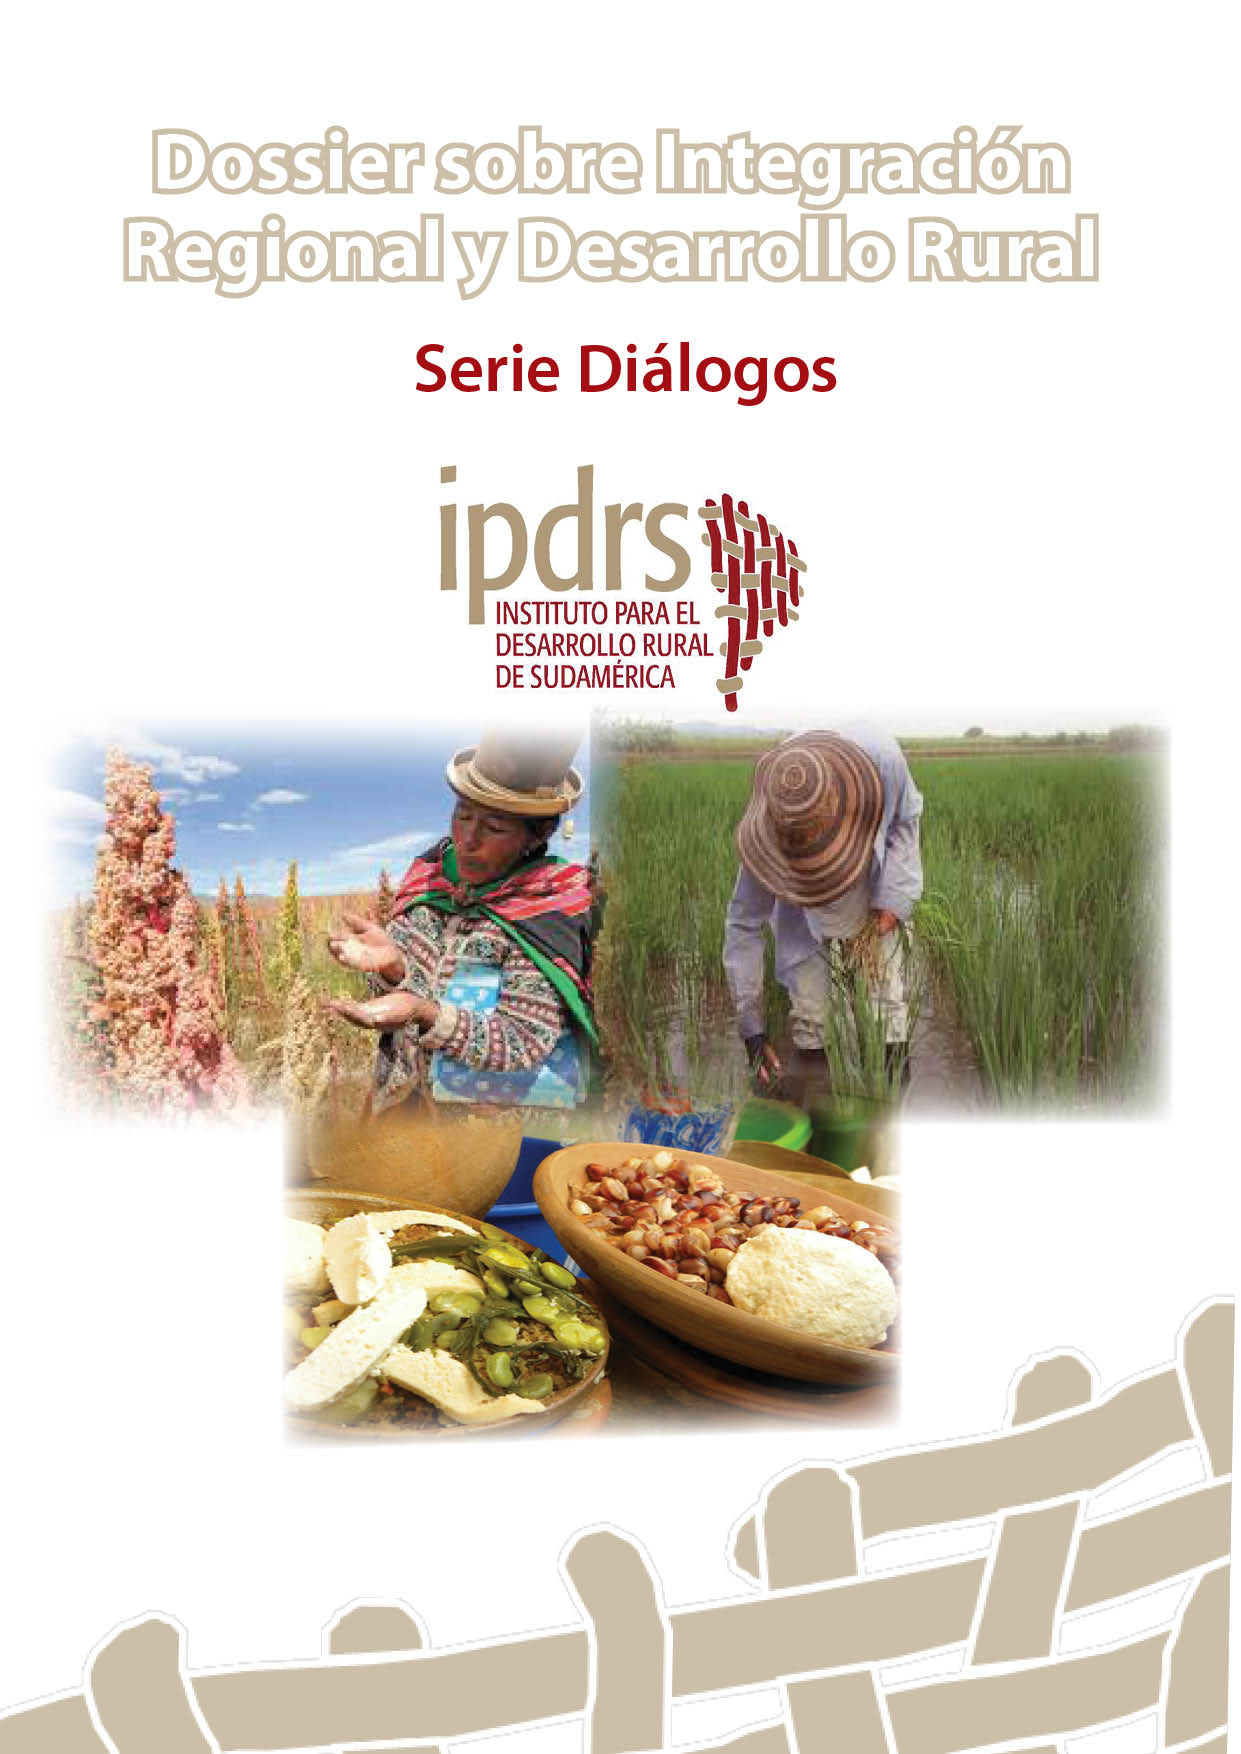 Dossier Integración Regional y Desarrollo Rural